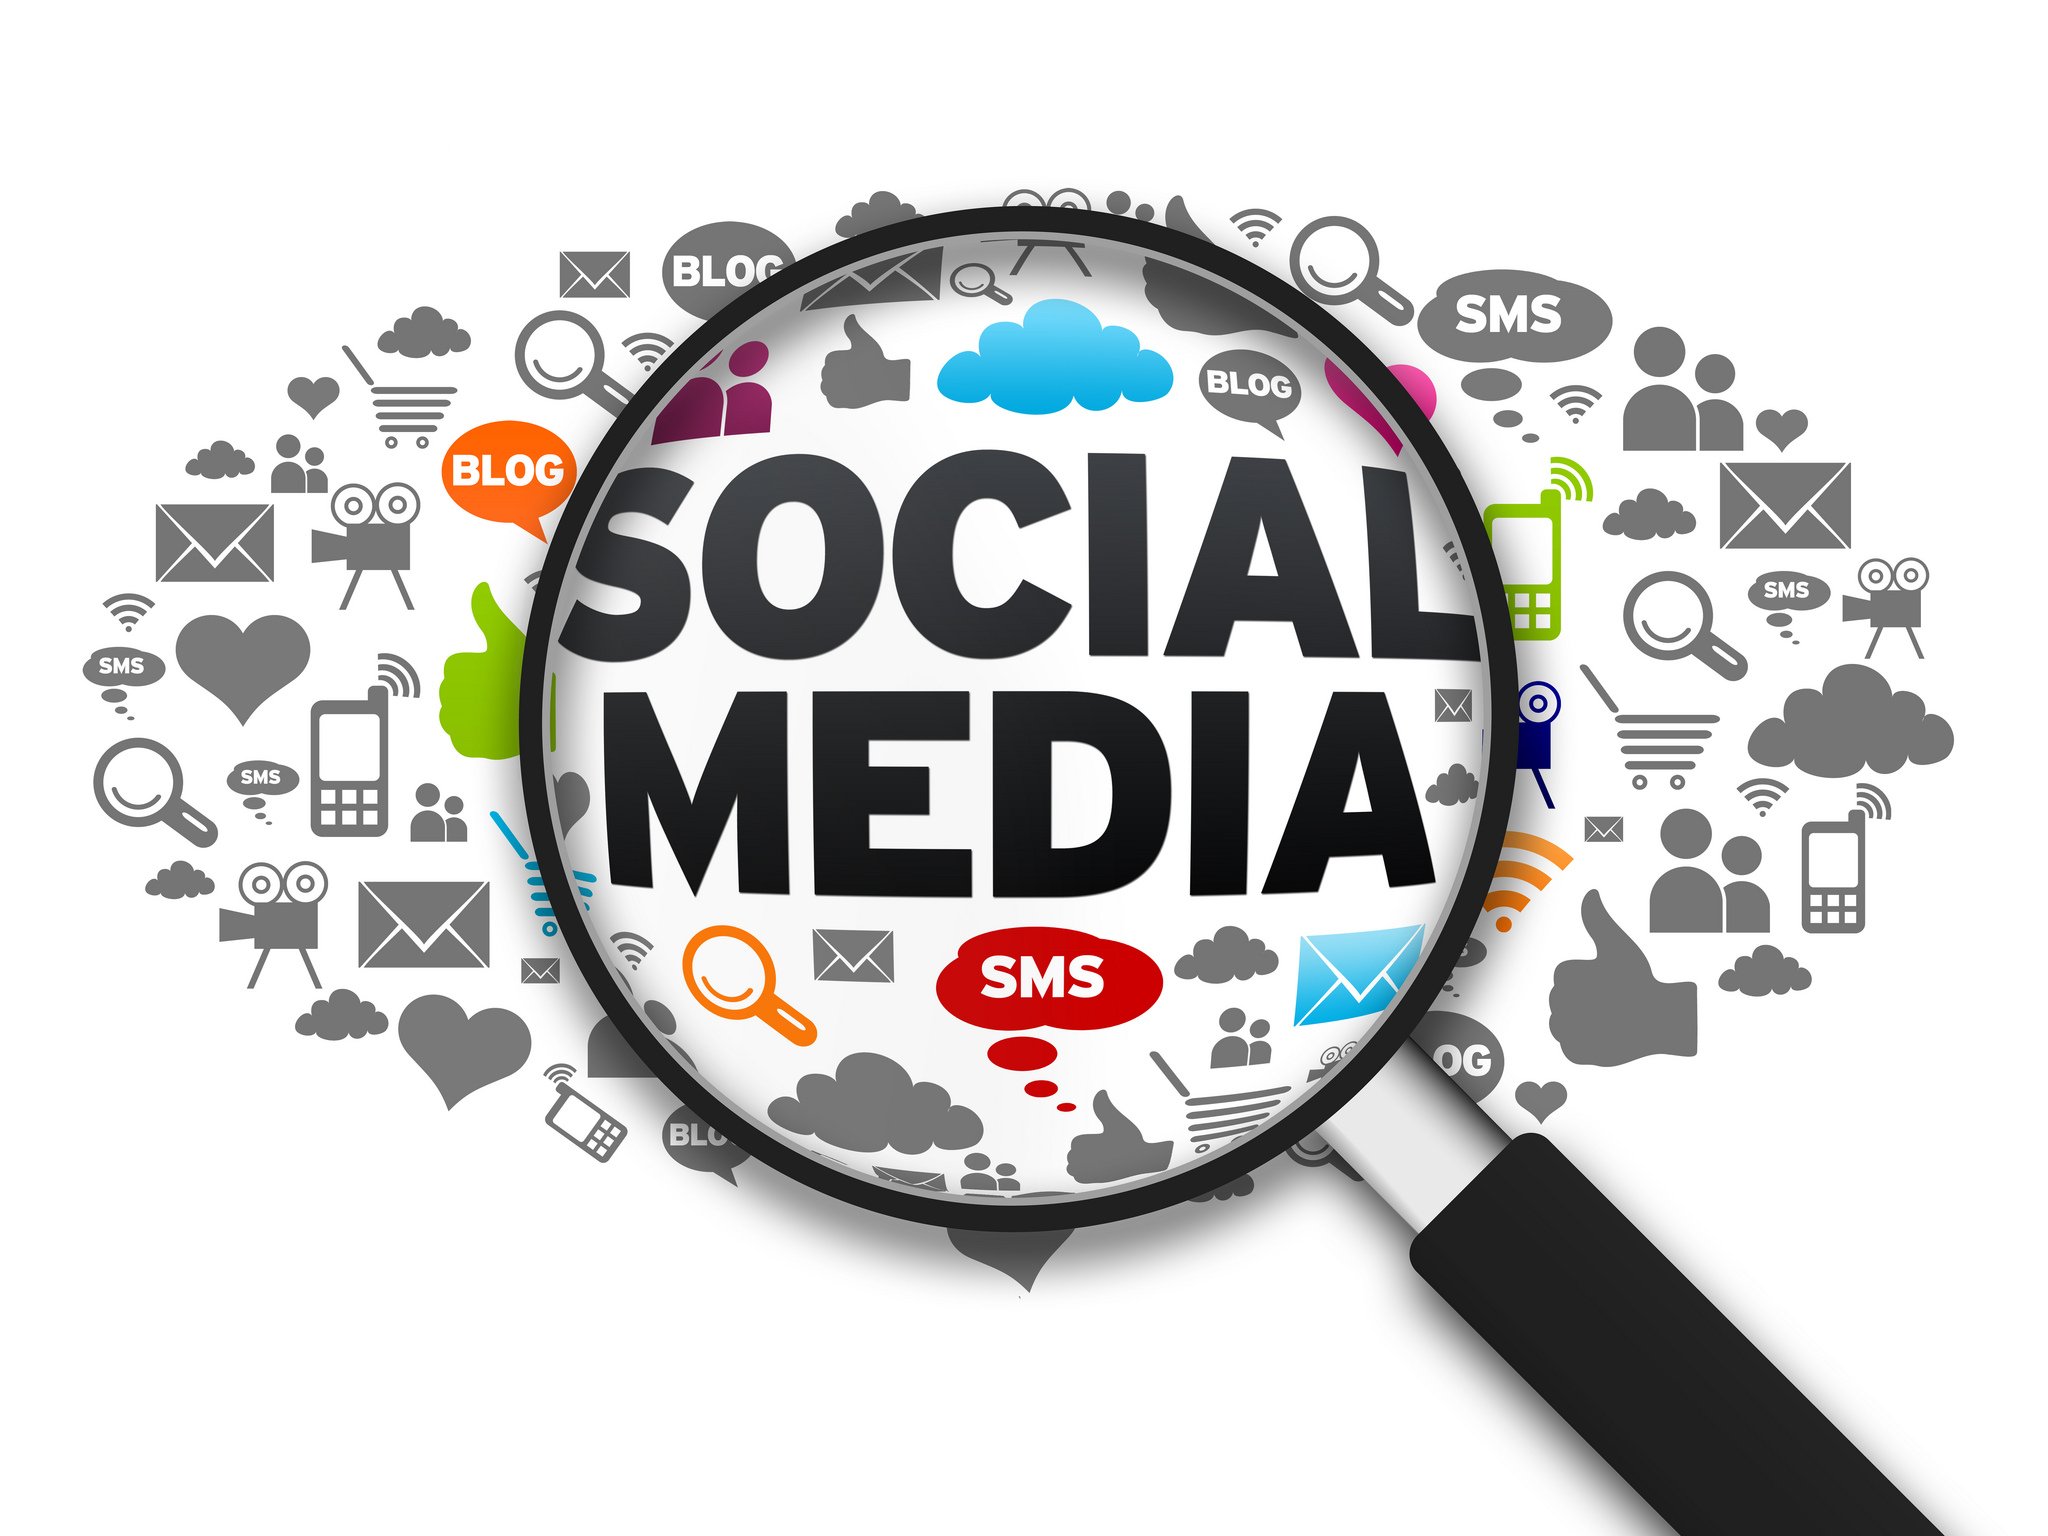 social media digital marketing